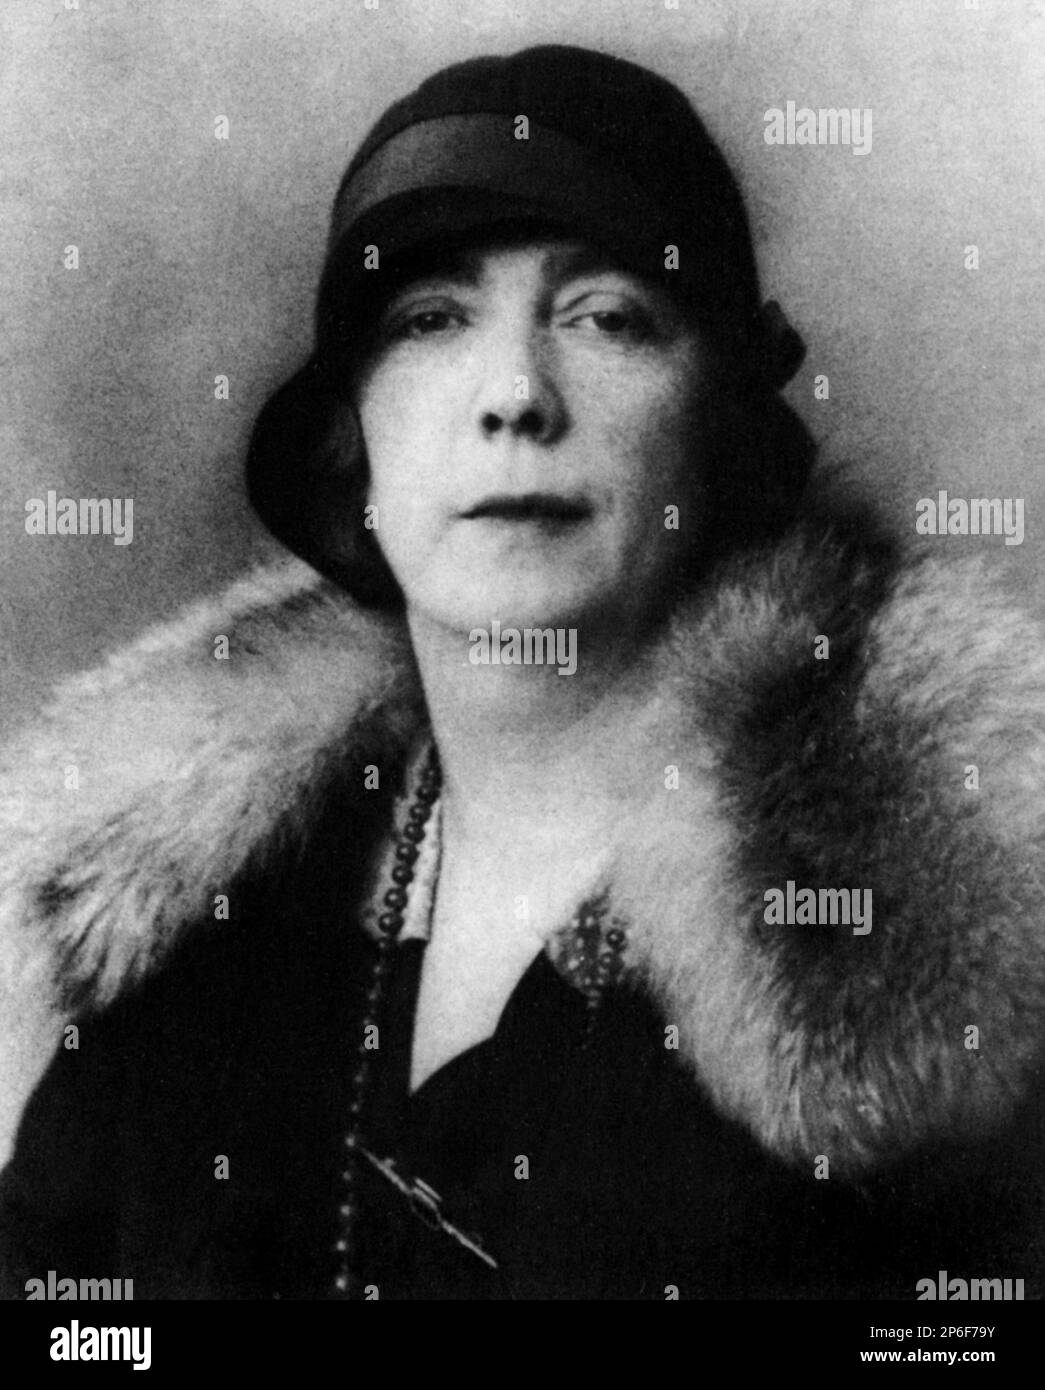 1920 's , Paris , France : NORA JOYCE , wife of most celebrated  irish writer JAMES JOYCE ( Dublin 1882 - Zurich 1941 )  - SCRITTORE - LETTERATURA - LITERATURE - letterato -  hat - cappello - fur - pelliccia portrait - ritratto ----  Archivio GBB Stock Photo